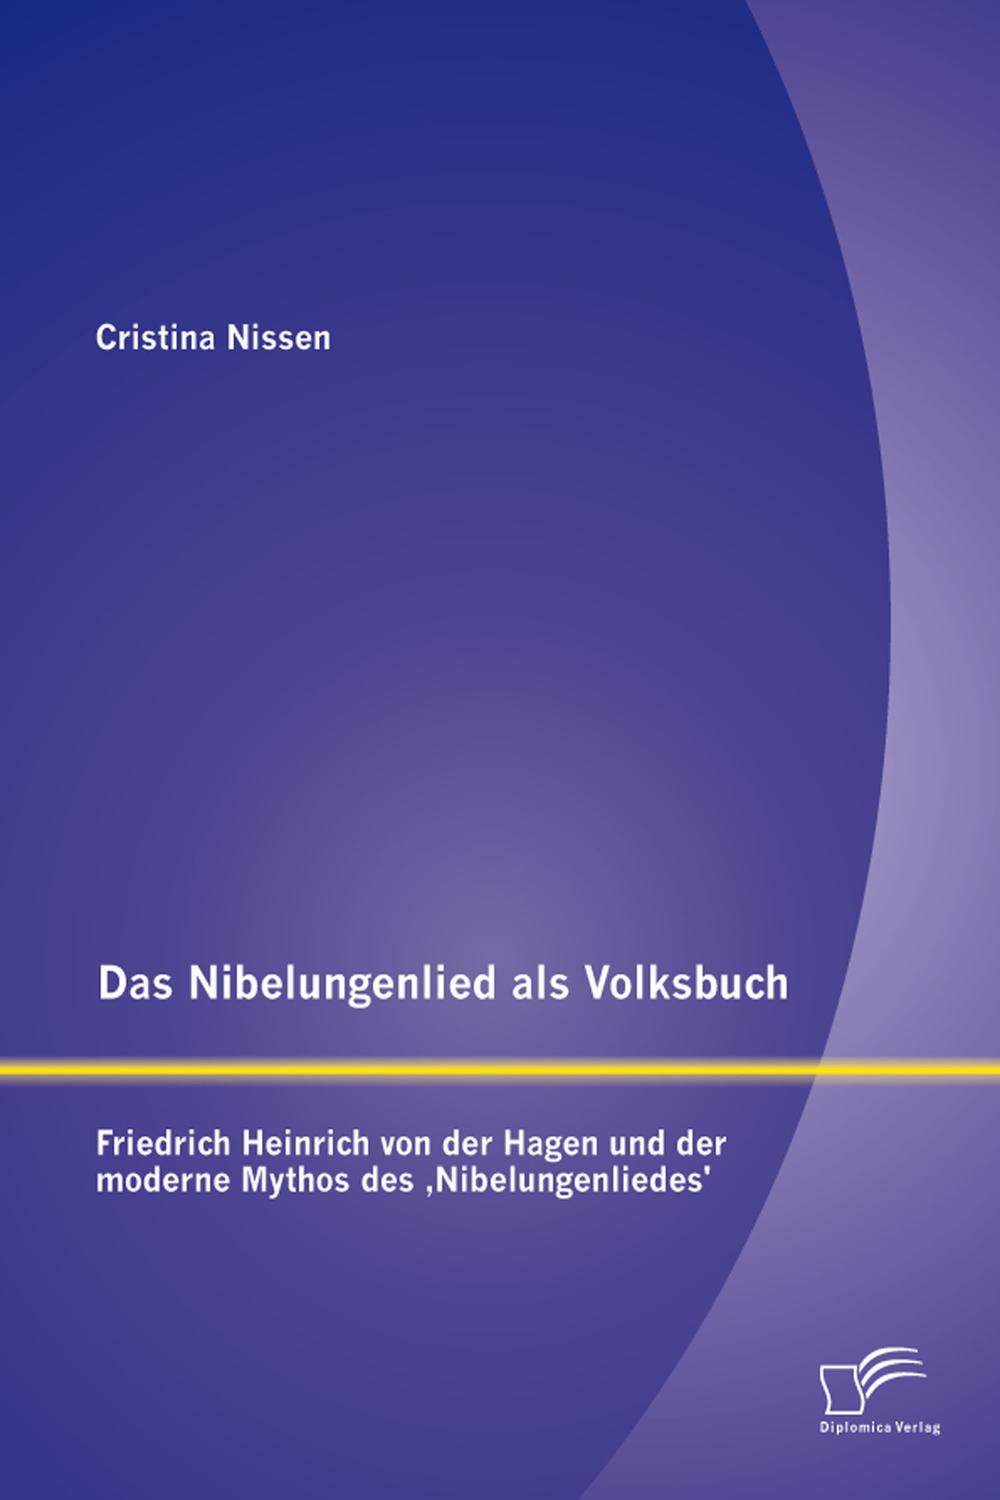 Das Nibelungenlied als Volksbuch: Friedrich Heinrich von der Hagen und der moderne Mythos des 'Nibelungenliedes' - Cristina Nissen